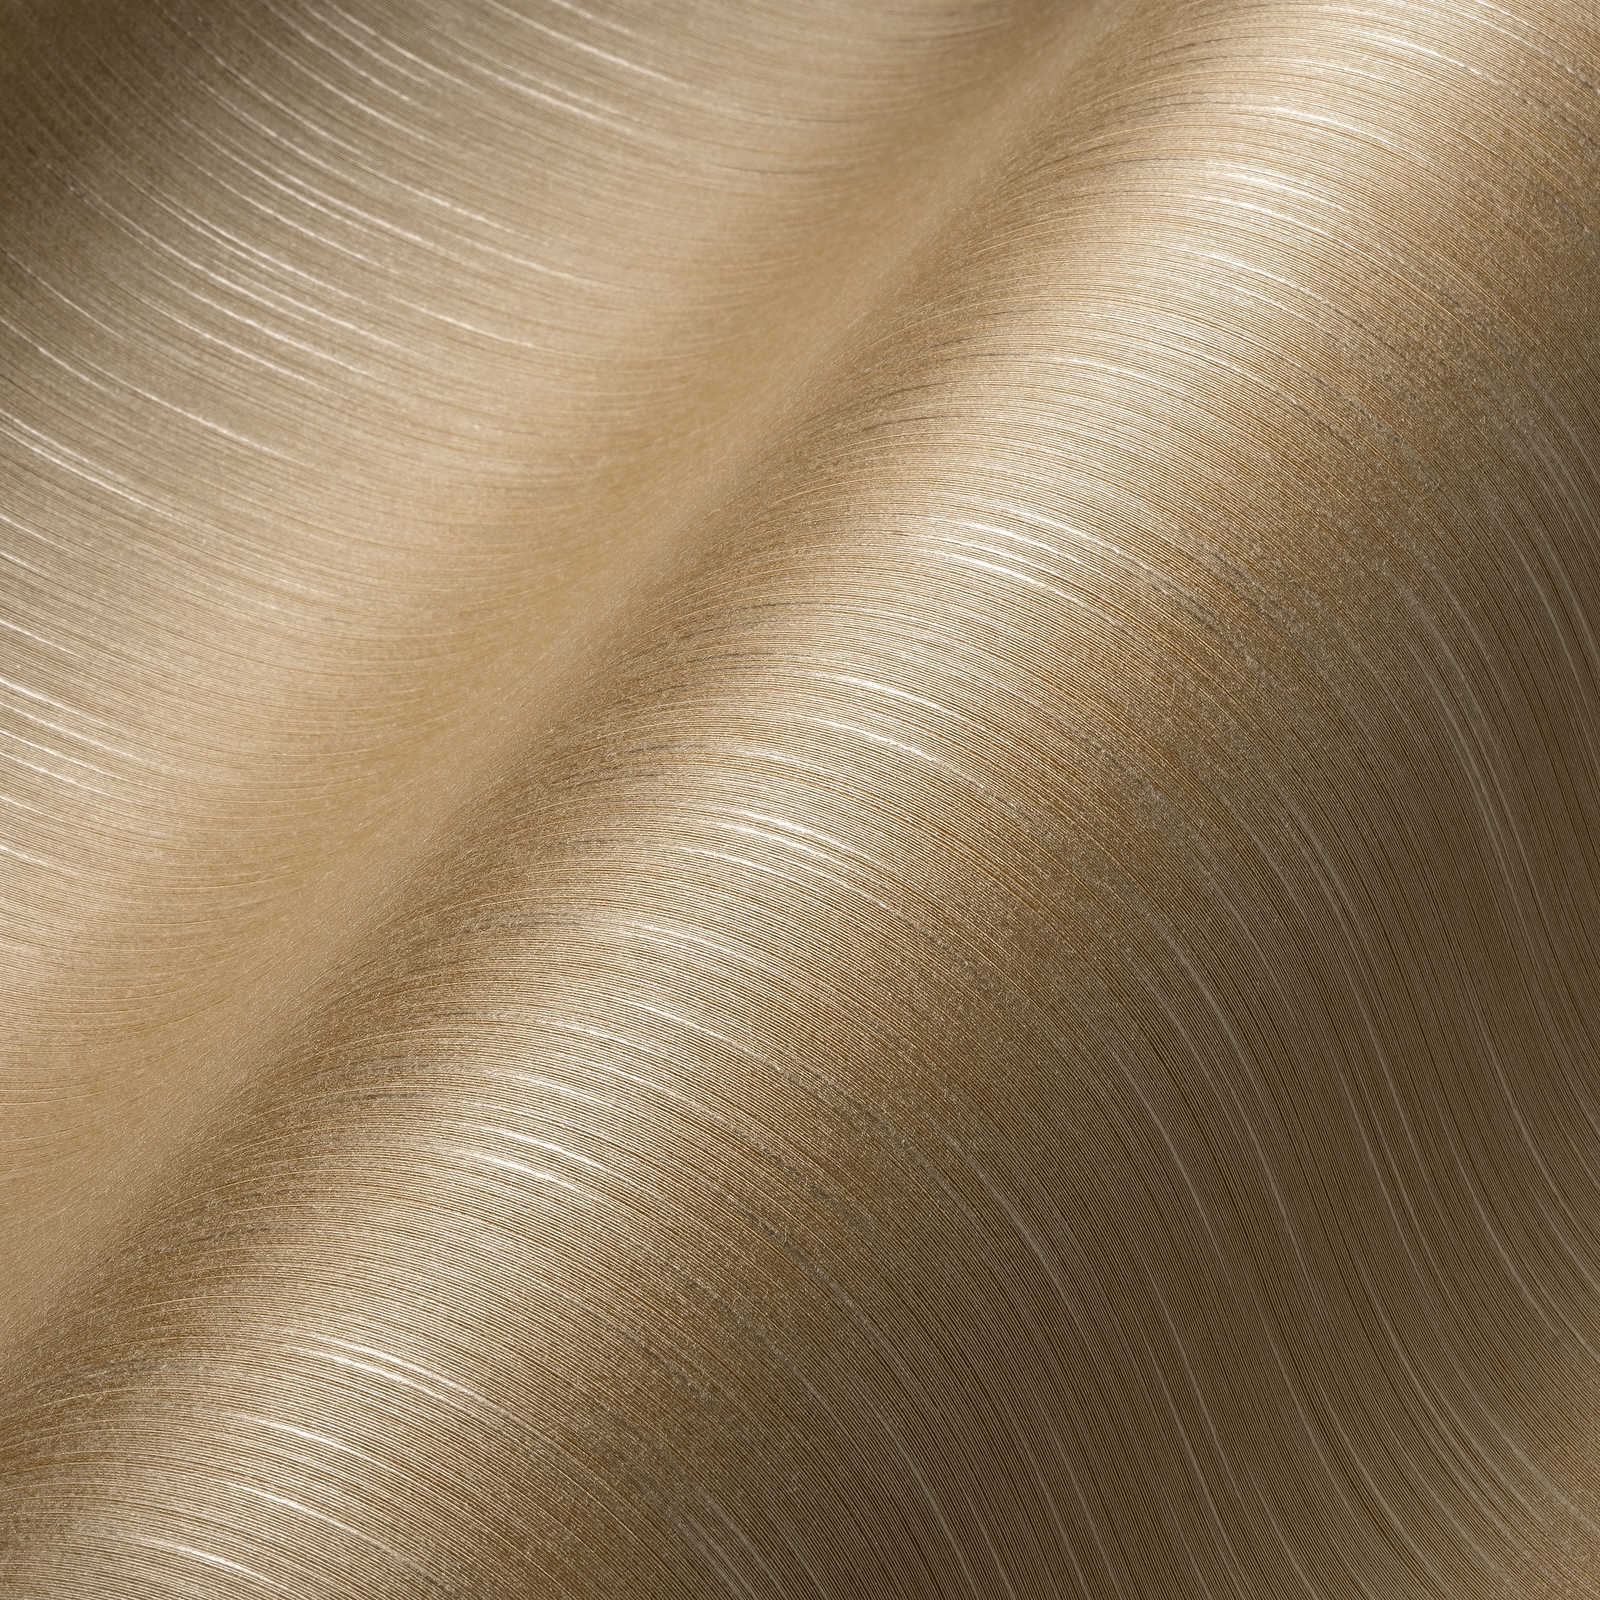             Zandoptiek behang beige gevlekt met textielstructuur
        